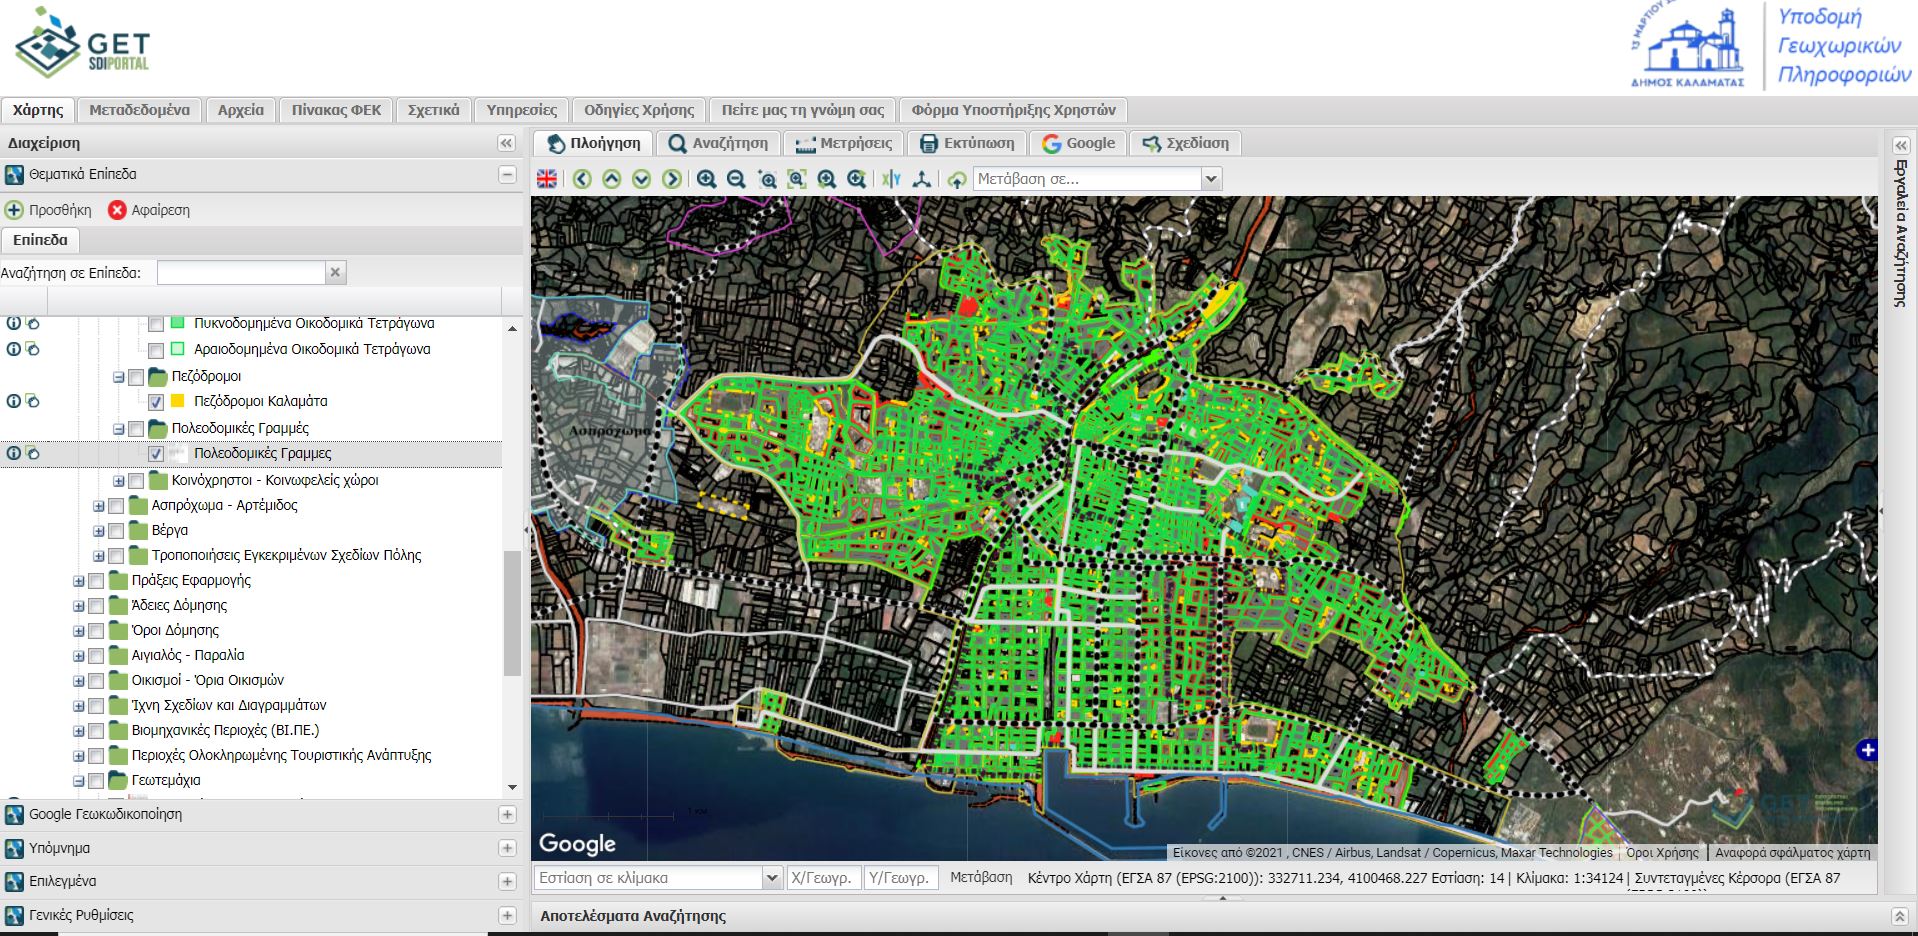 Ανάπτυξη συστήματος GIS για τις υποδομές του Δήμου